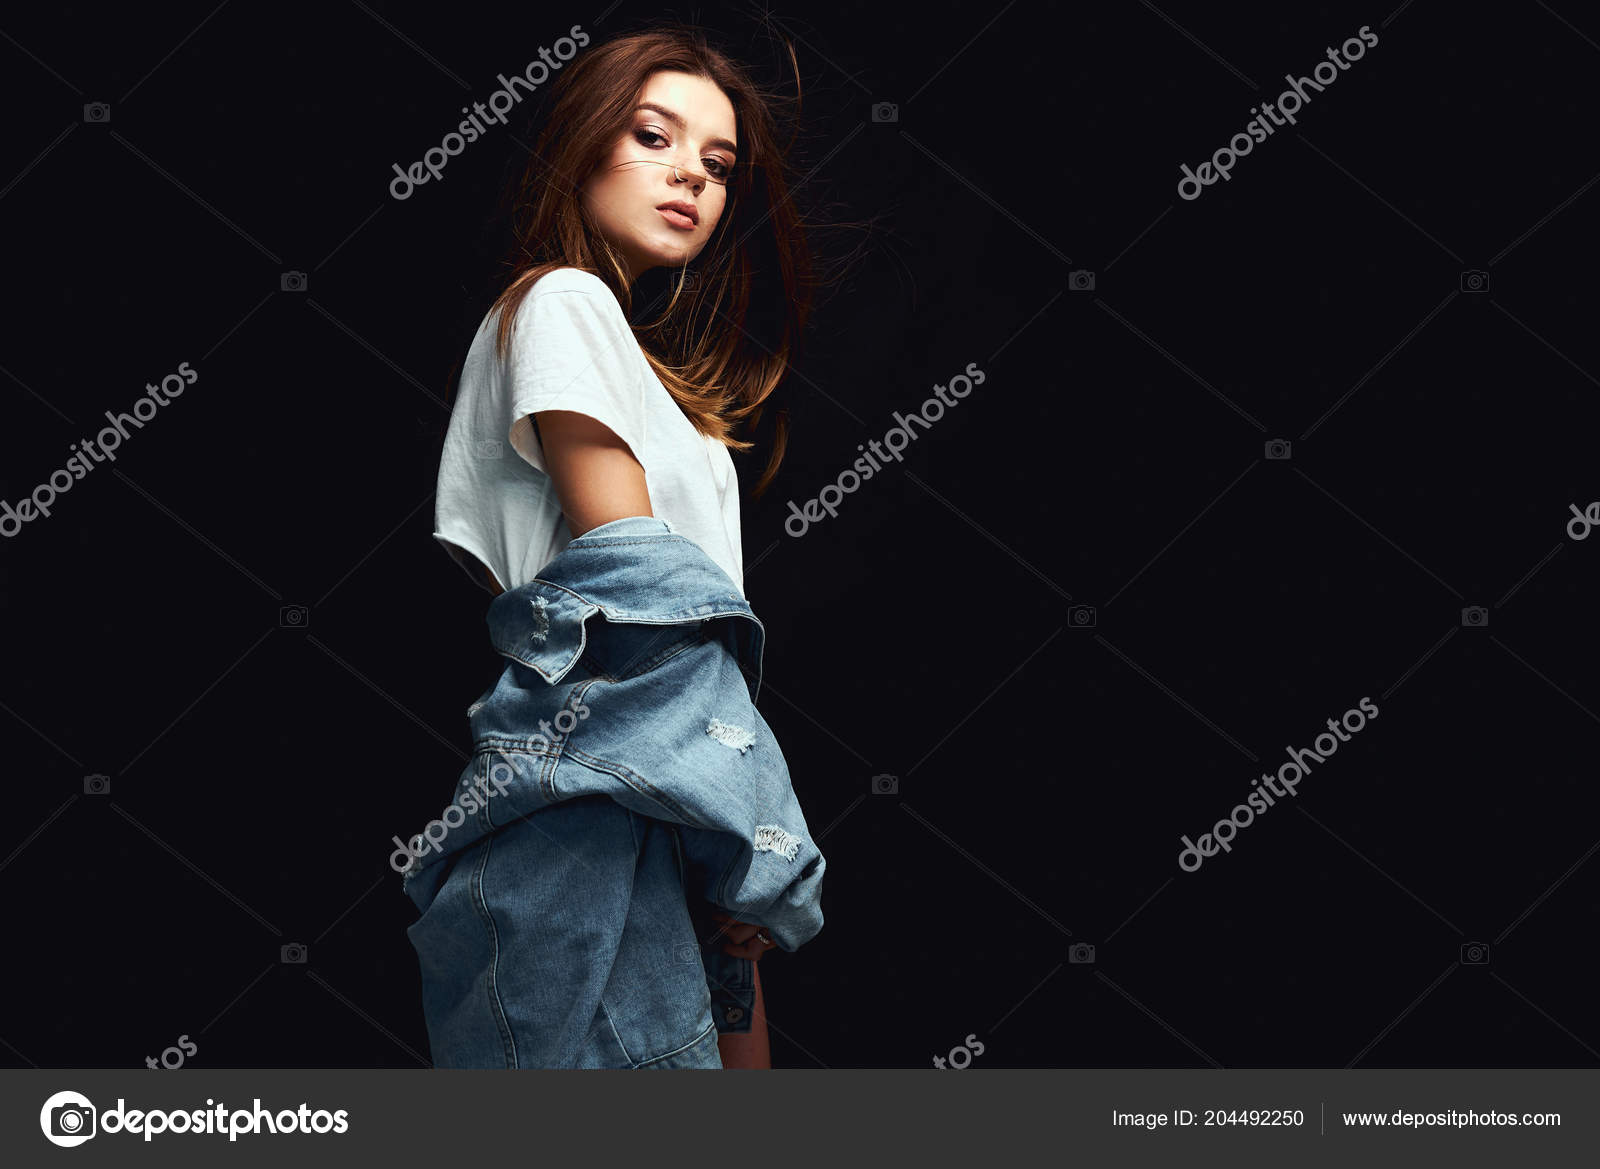 Good Looking Female Wearing Denim Jacket Posing in Studio Stock Photo -  Image of looking, standing: 167567940